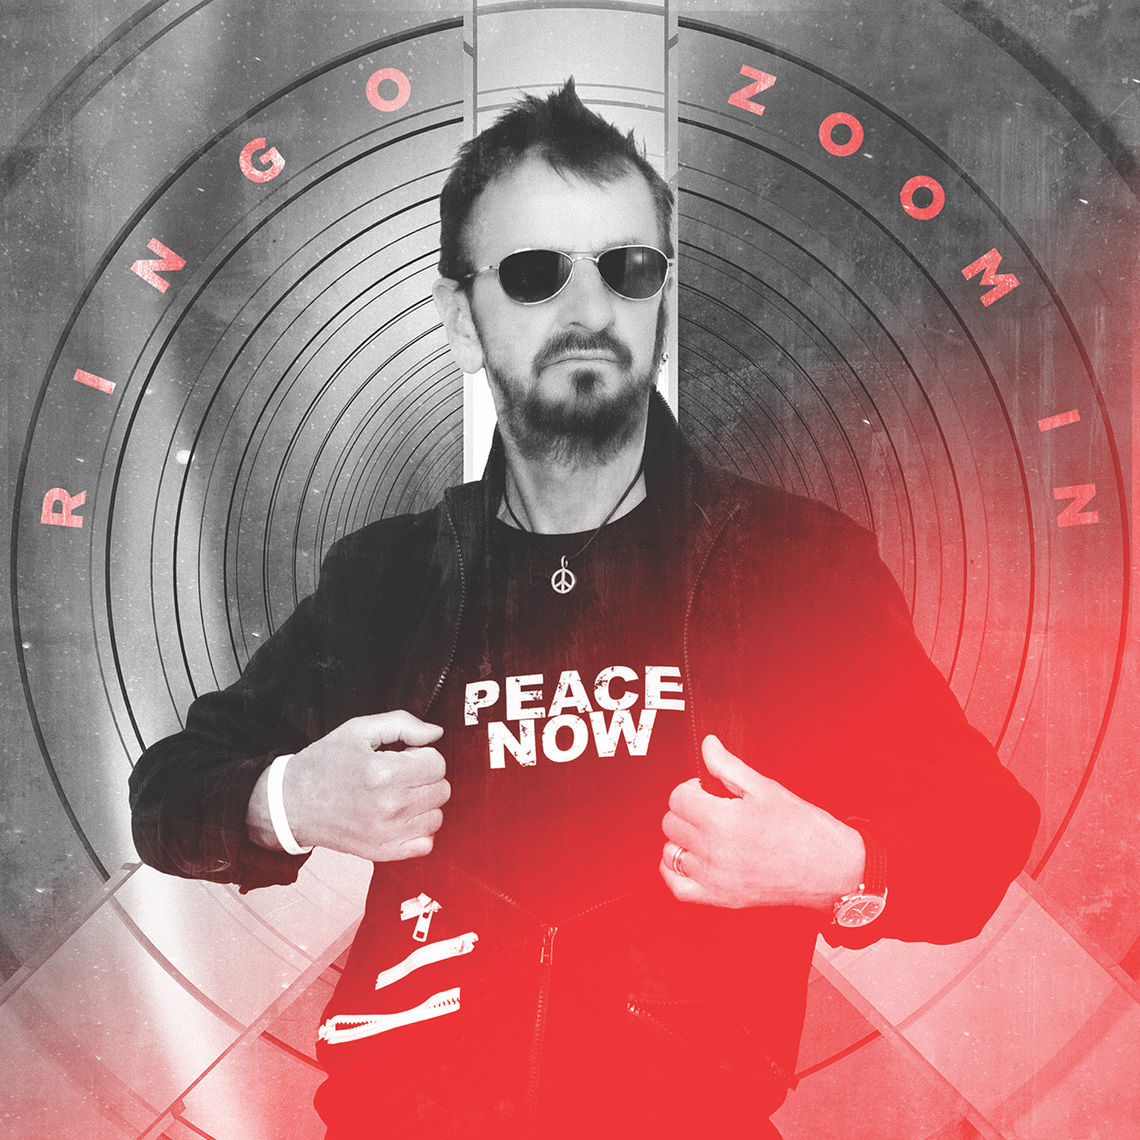 La portada del EP de Ringo Starr, "Zoom In".